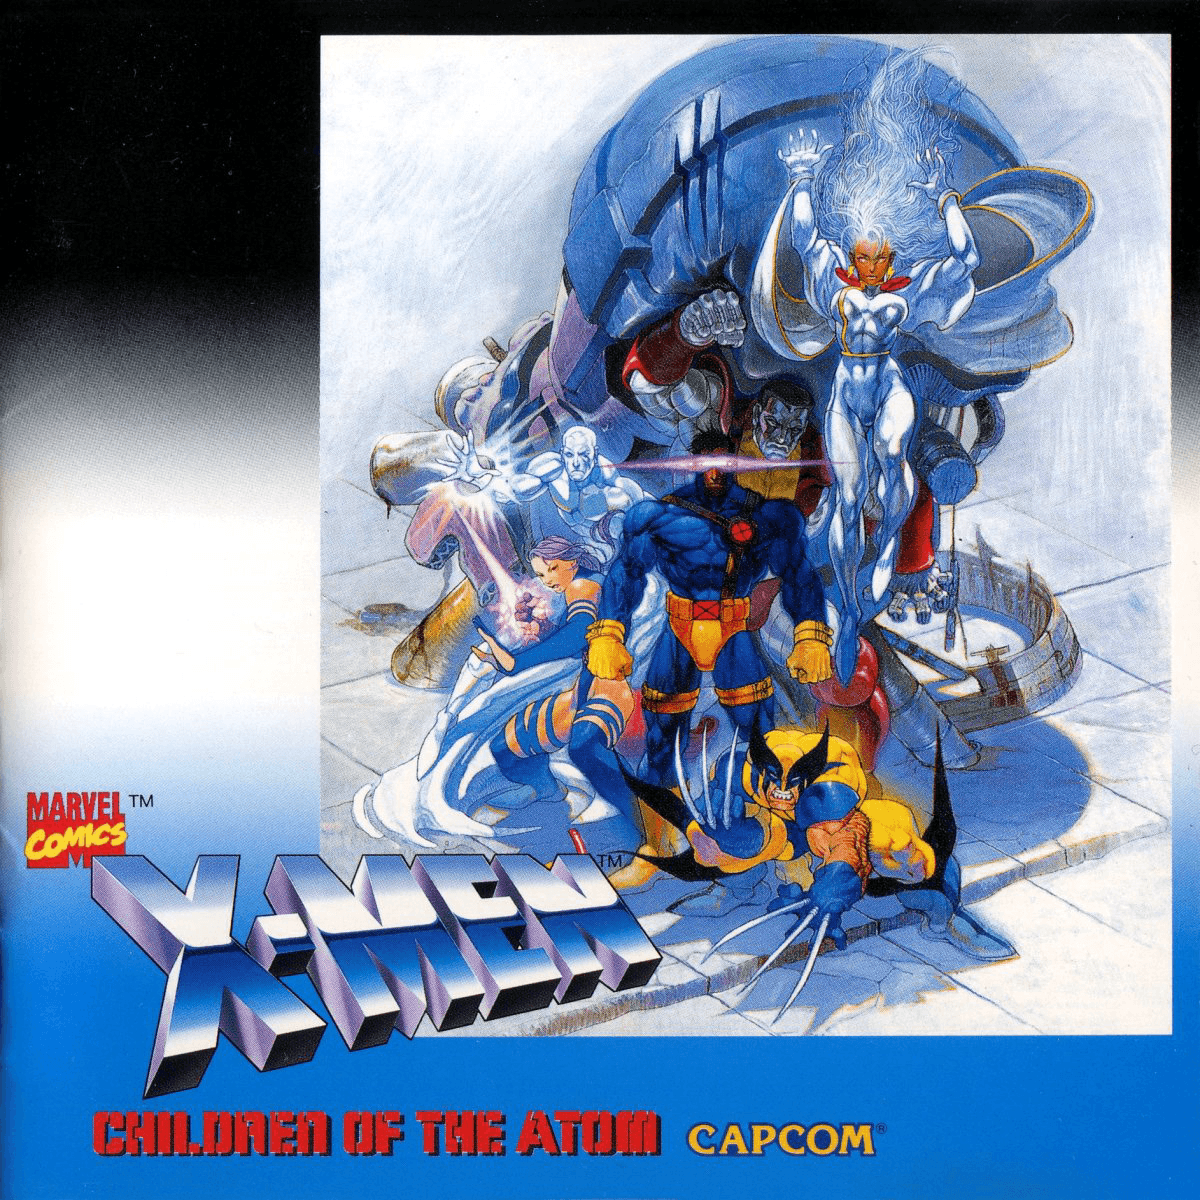 X-Men: Children of the Atom Arcade Gametrack